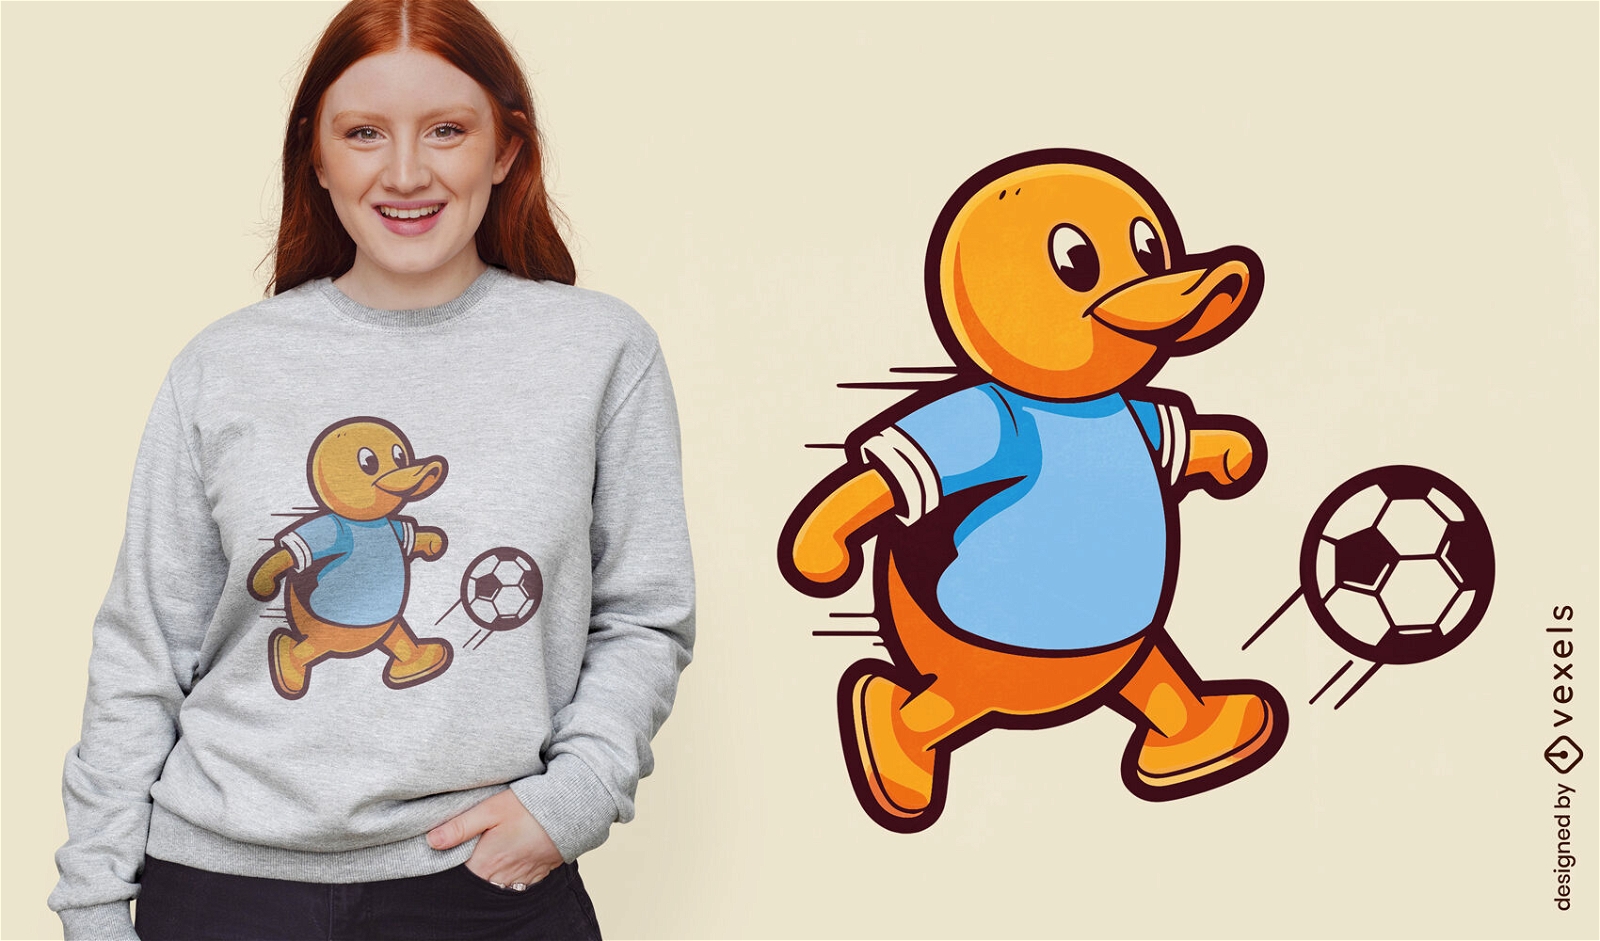 Rubber duck soccer t-shirt design